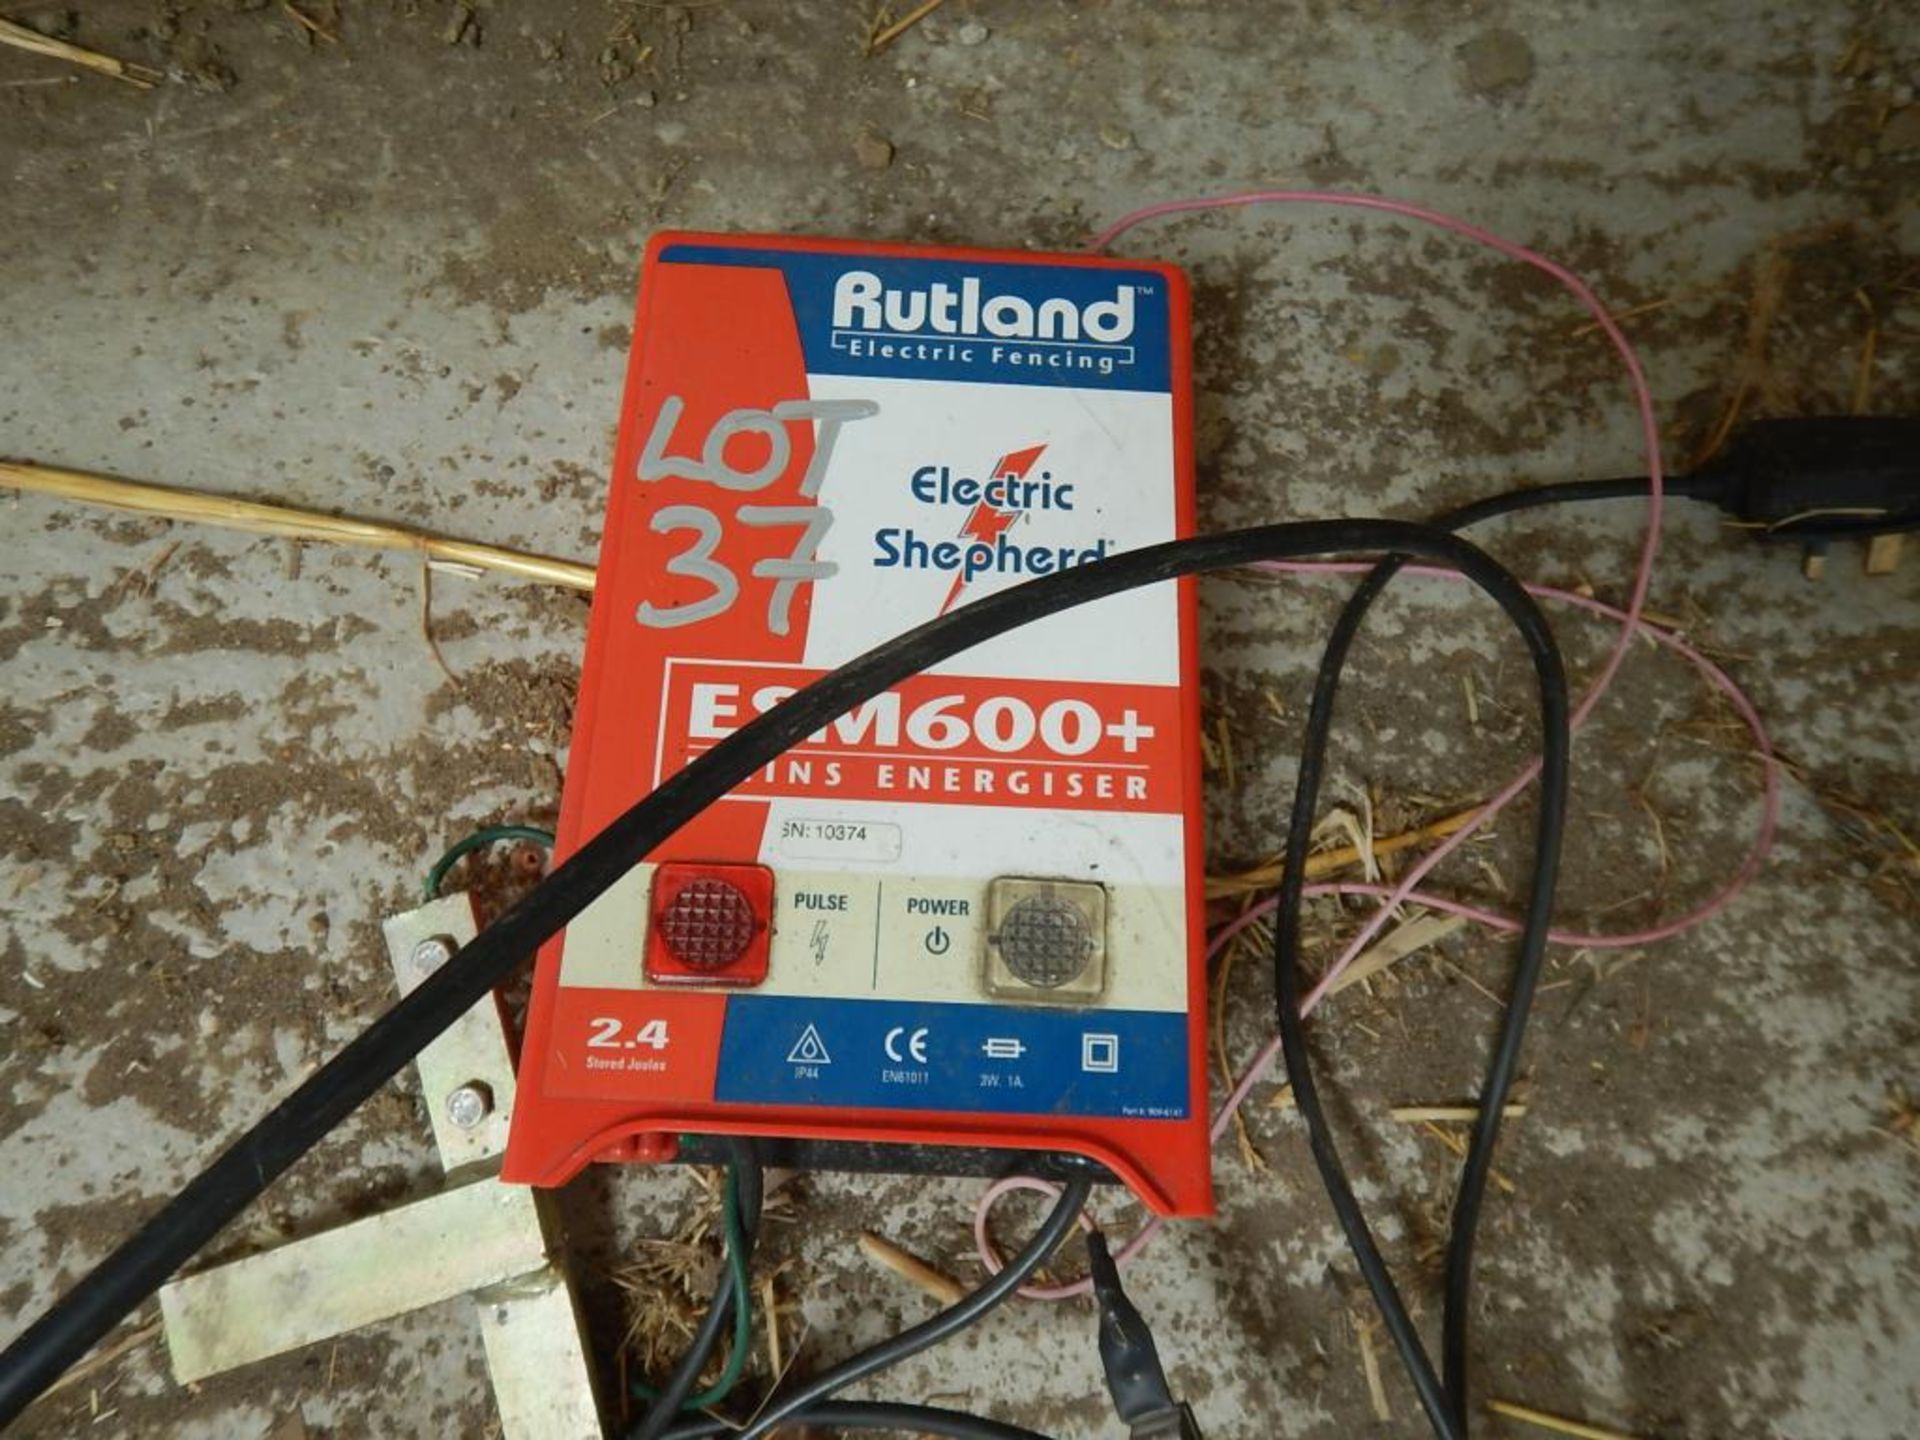 Rutland CSM600+ electric fence unit